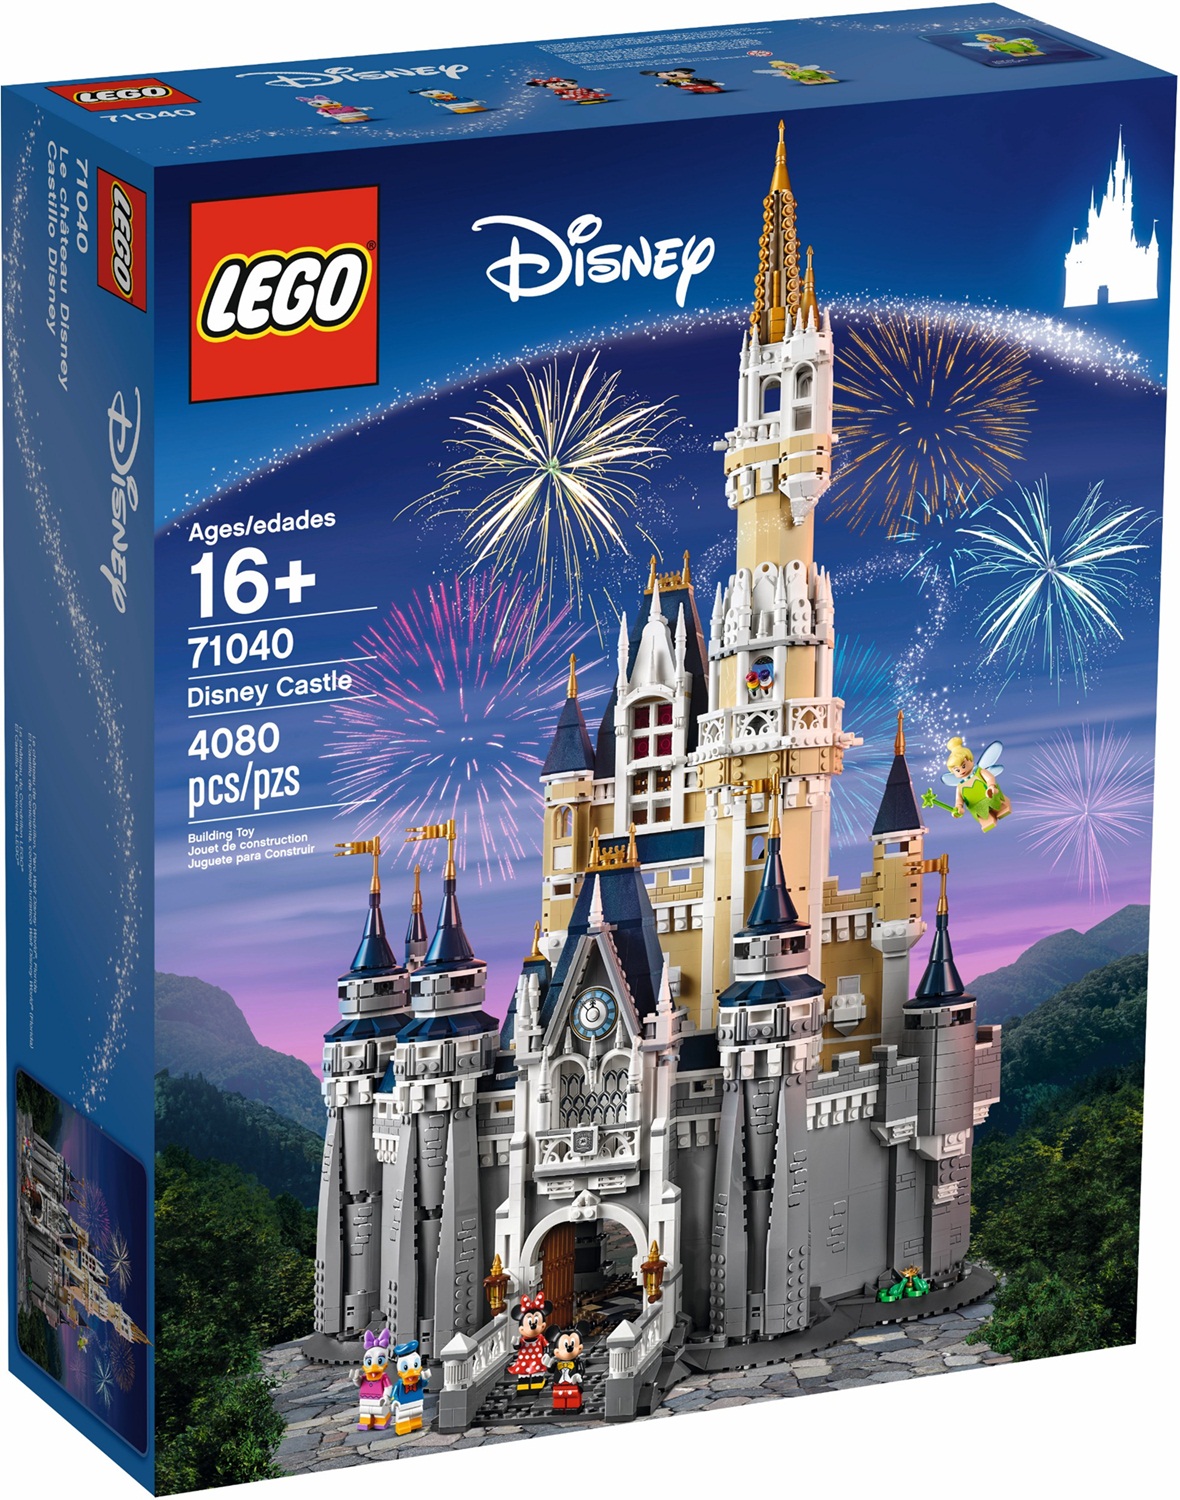 71040 LEGO Disney Castle - Lâu đài Disney